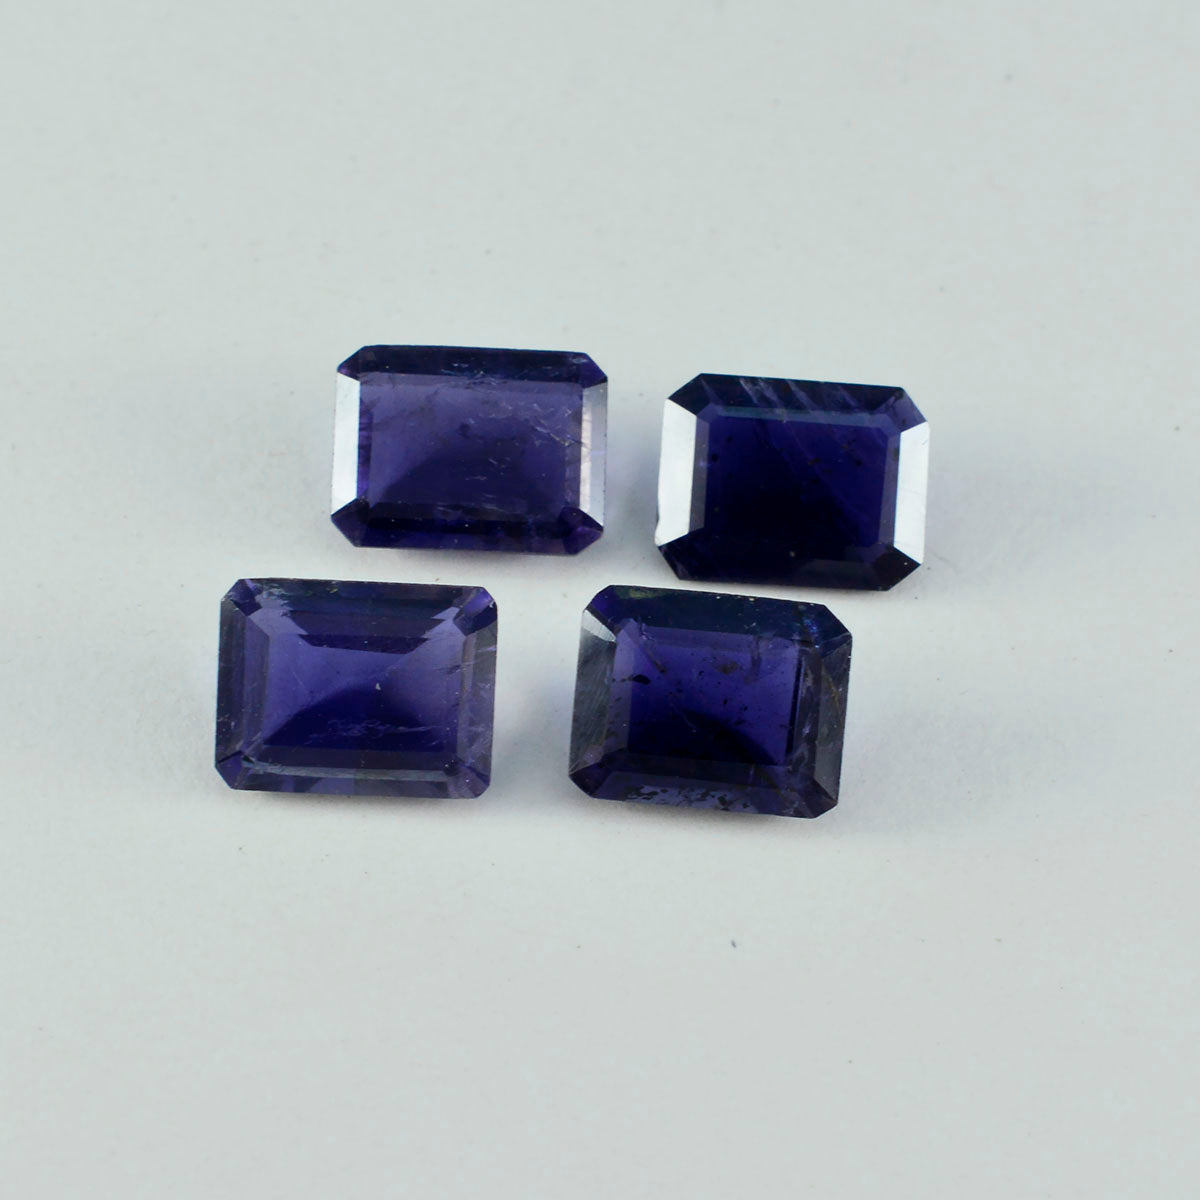 Riyogems 1 Stück blauer Iolith, facettiert, 10 x 12 mm, Achteckform, Edelstein in AAA-Qualität